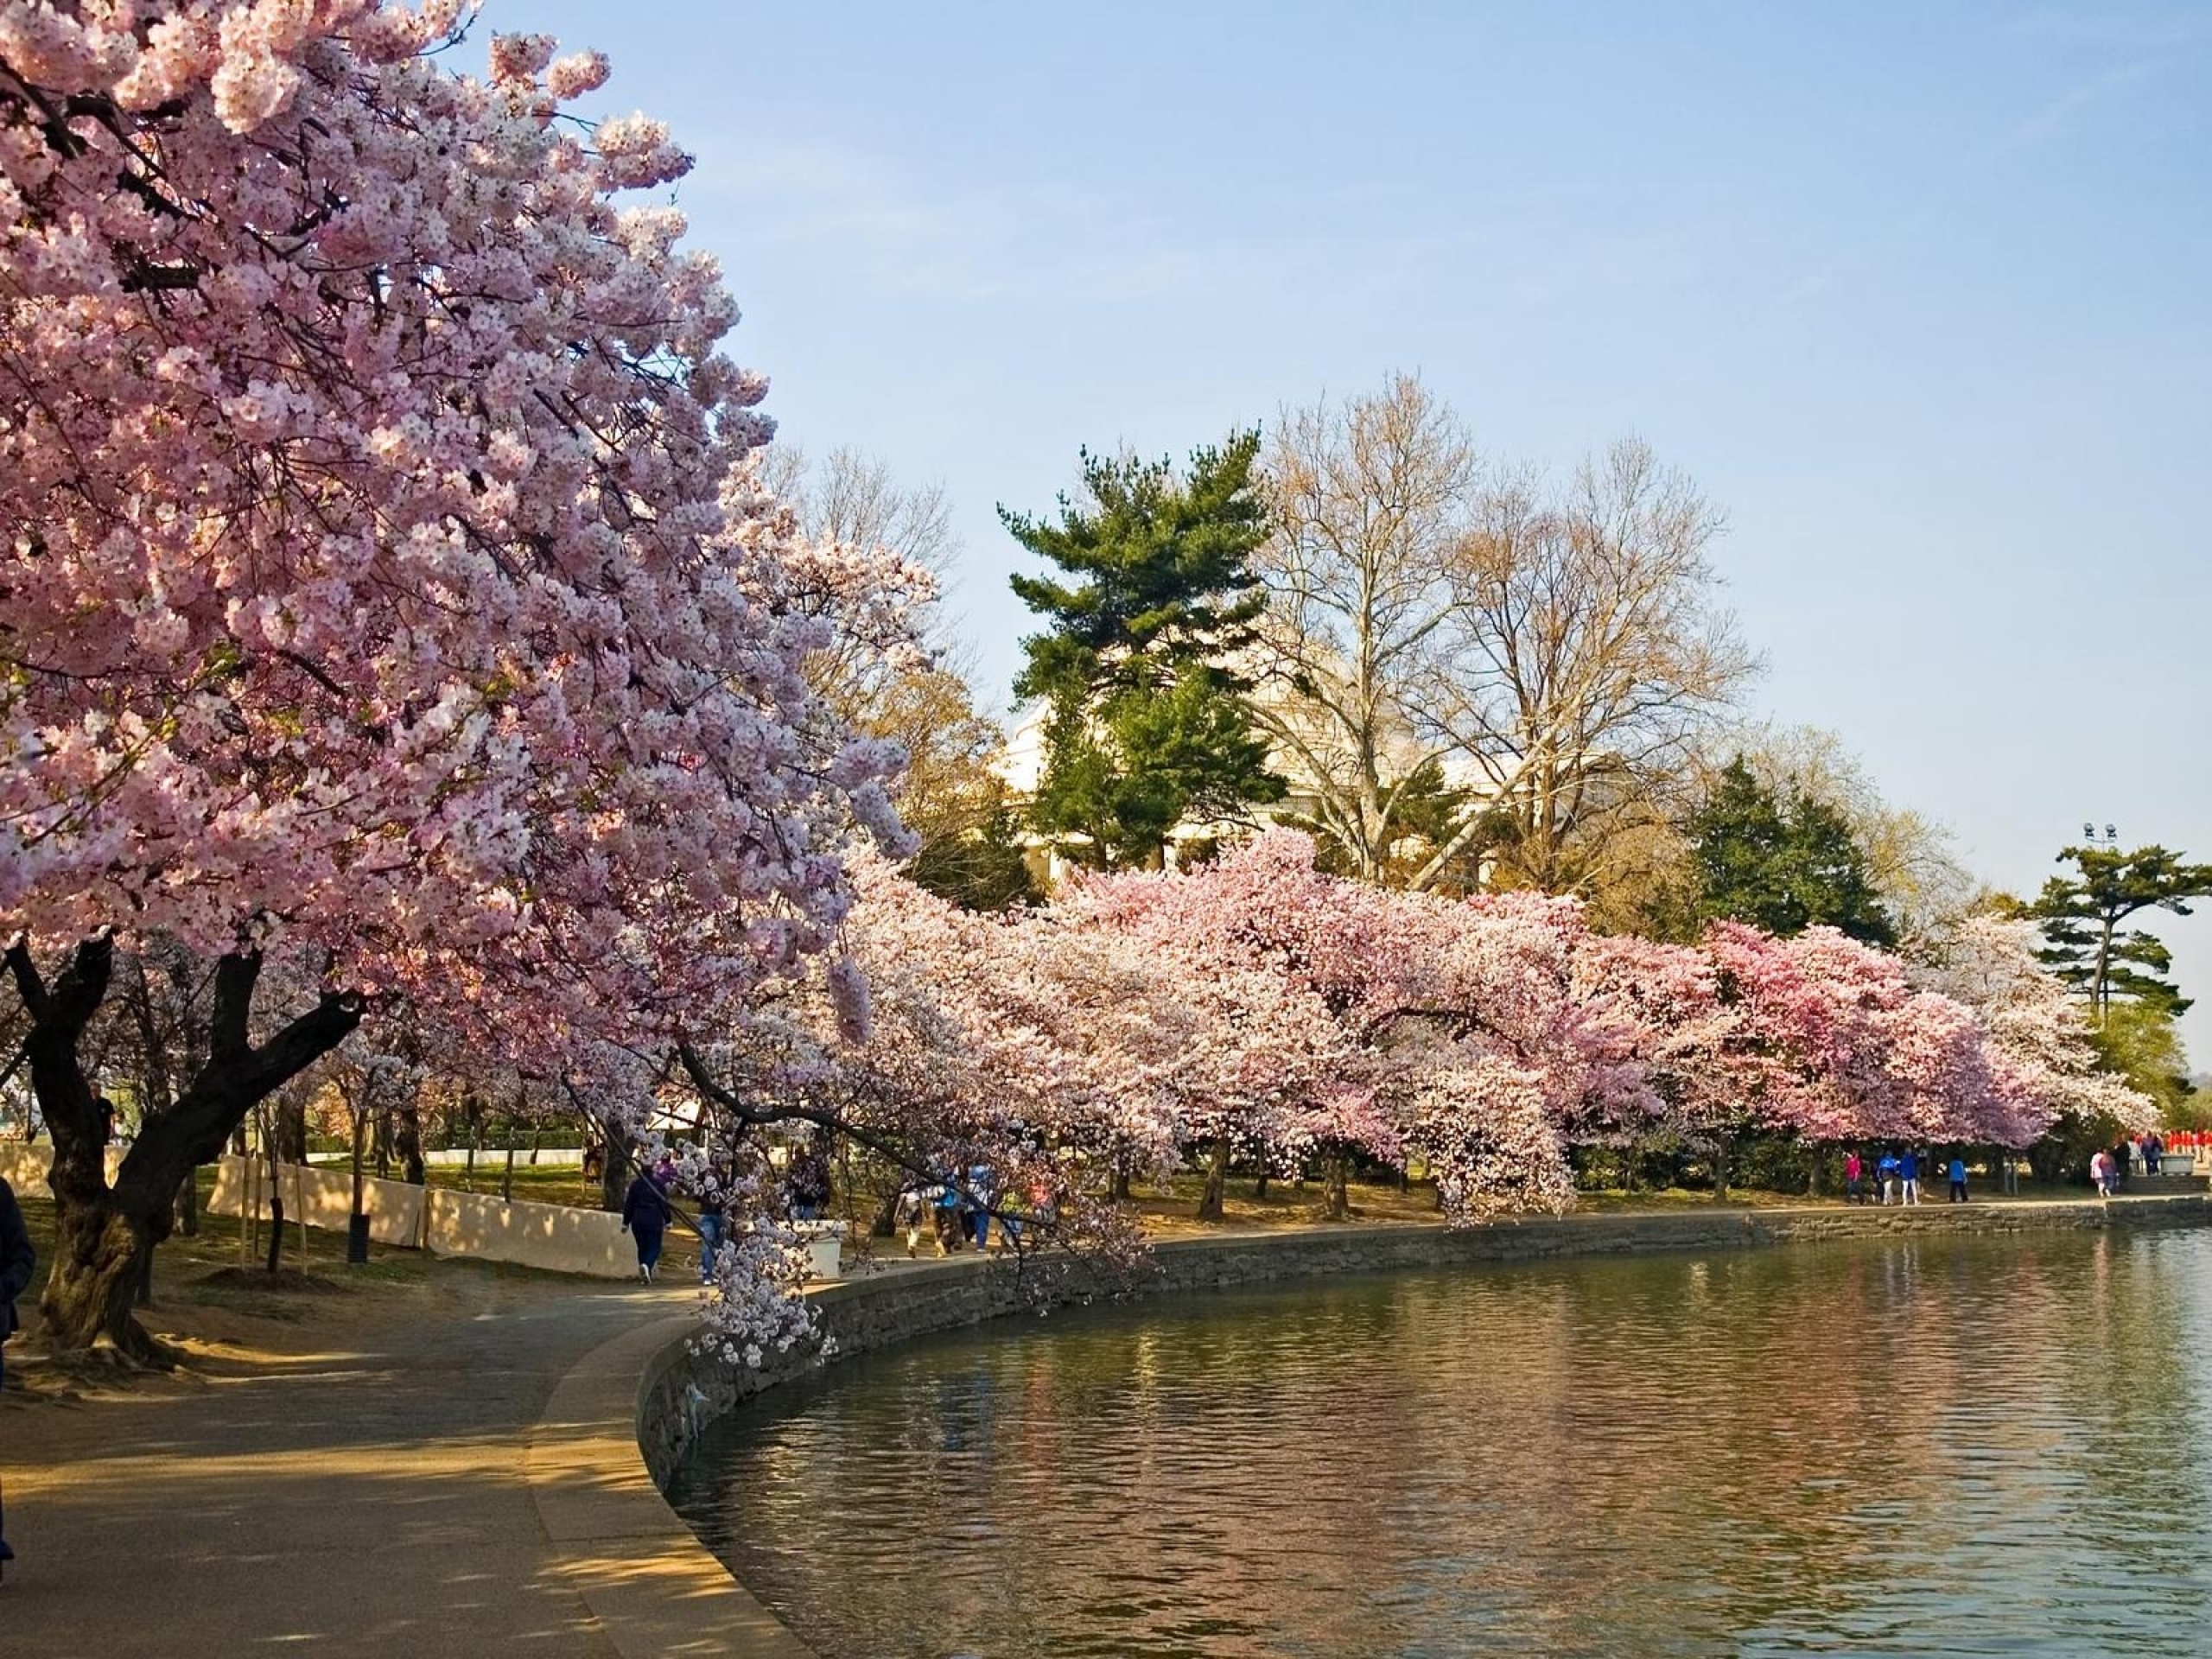 Cherry blossom отзывы. Сакура черри блоссом дерево. Йокогама Япония цветение Сакуры. Ужгород Сакуры цветение Сакуры. Цветение Сакуры в Японии сады.